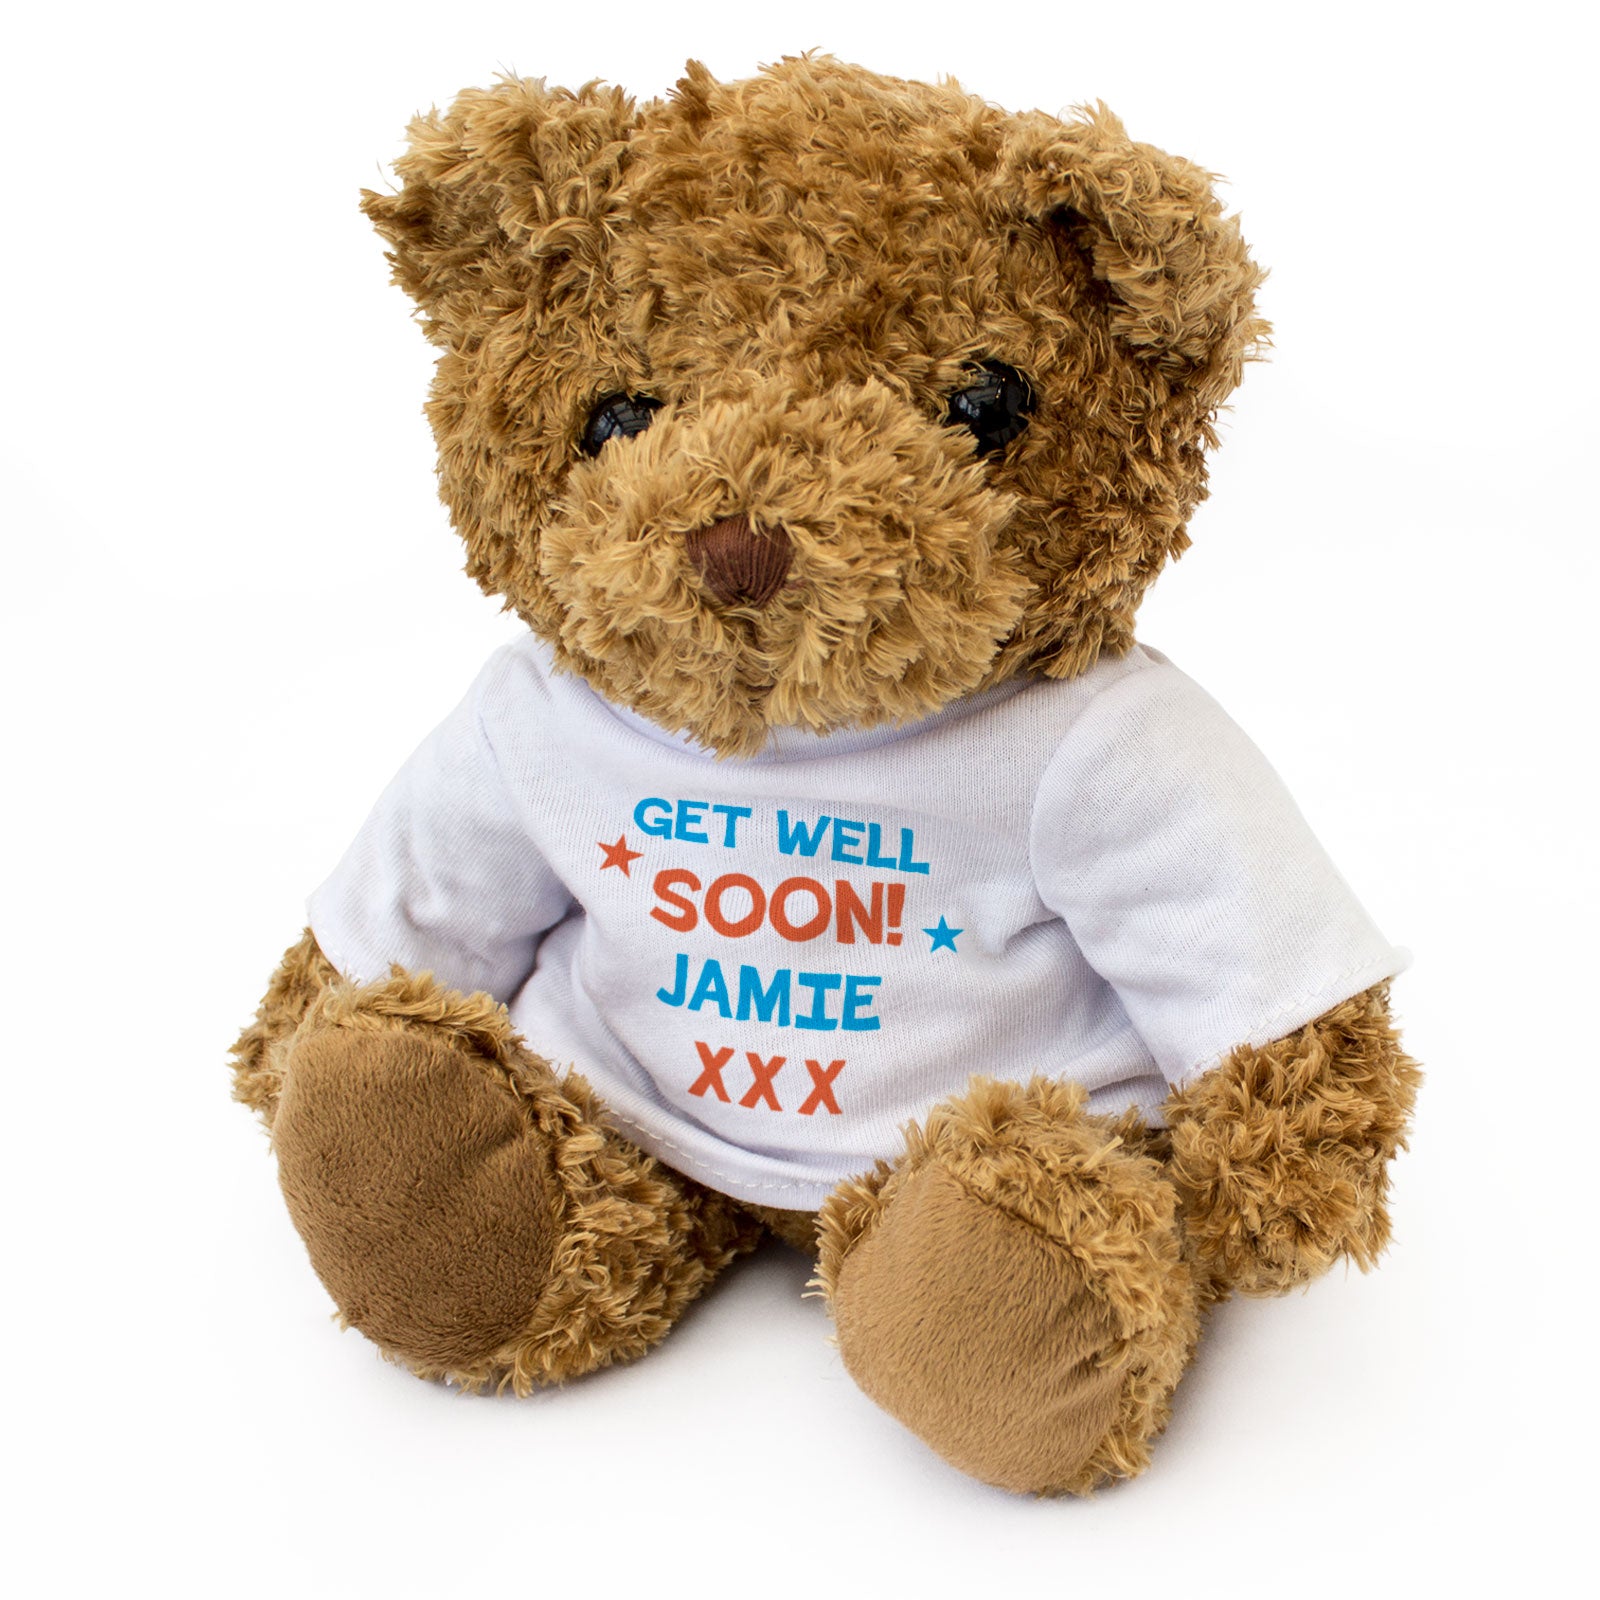 Get Well Soon Jamie - Teddy Bear